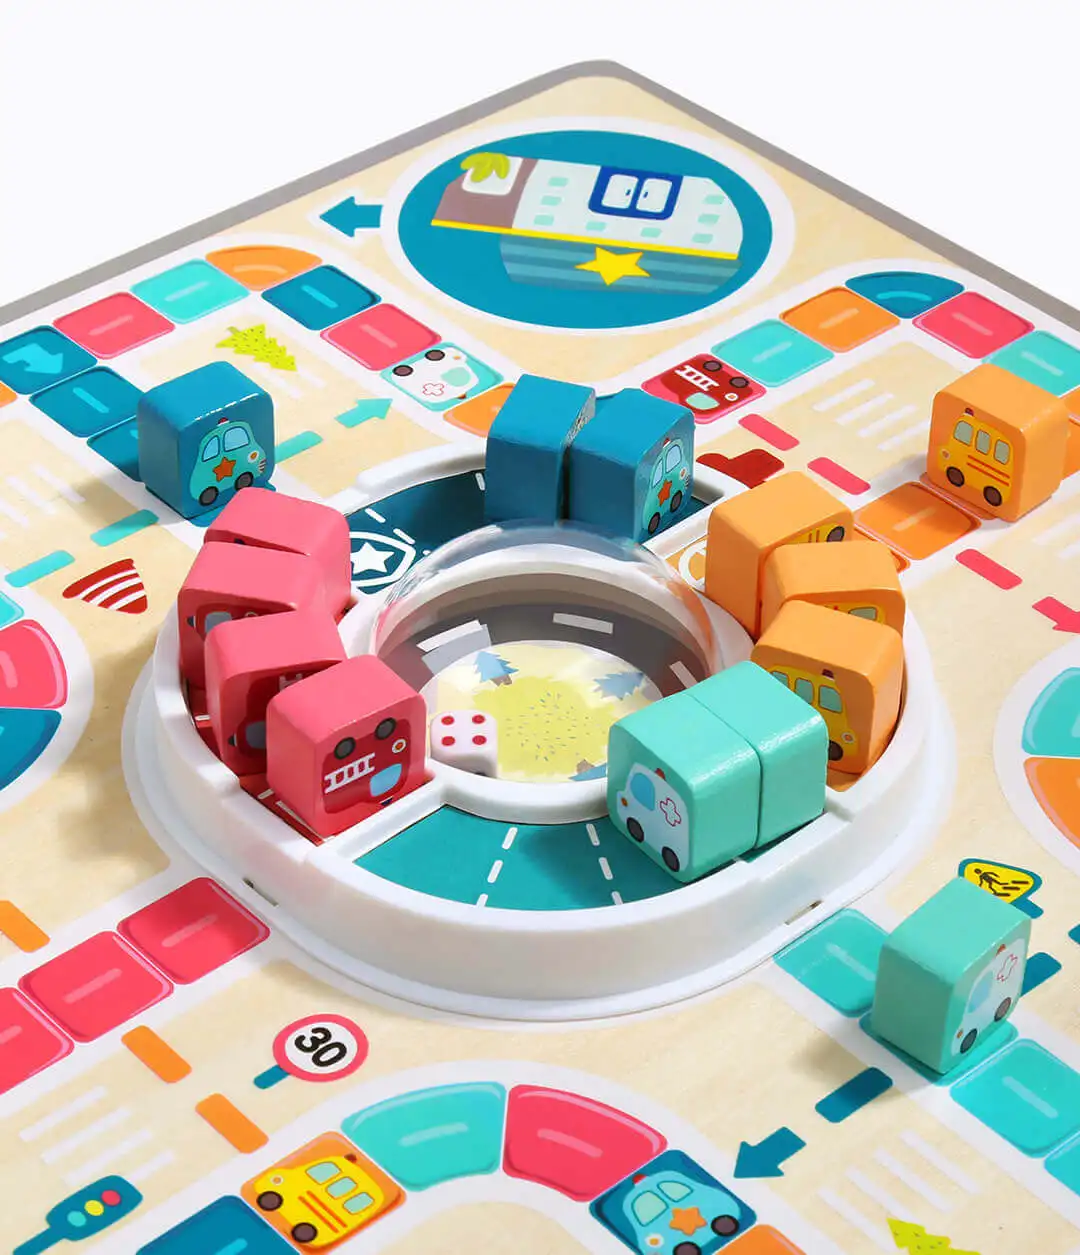 Xiaomi Topbright Авто город Летающие шахматы тематическая настольная игра Двухсторонняя доска двухсторонний геймплей для детей старше 3 лет